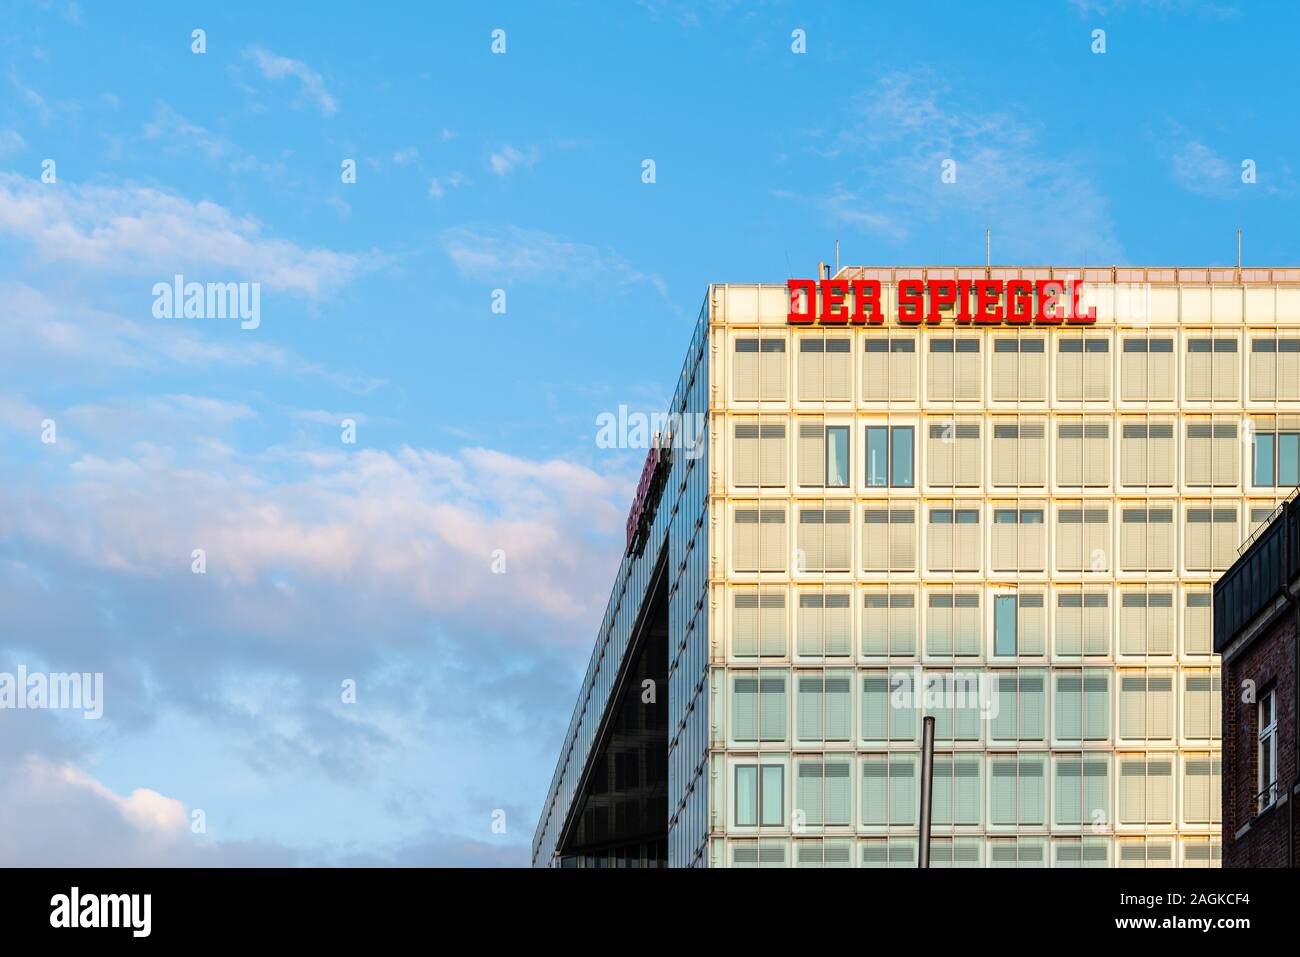 Hamburgo, Alemania - 3 de agosto, 2019: Der Spiegel de banner en la sede de la compañía en Hamburgo. Es una revista semanal de noticias alemán Foto de stock